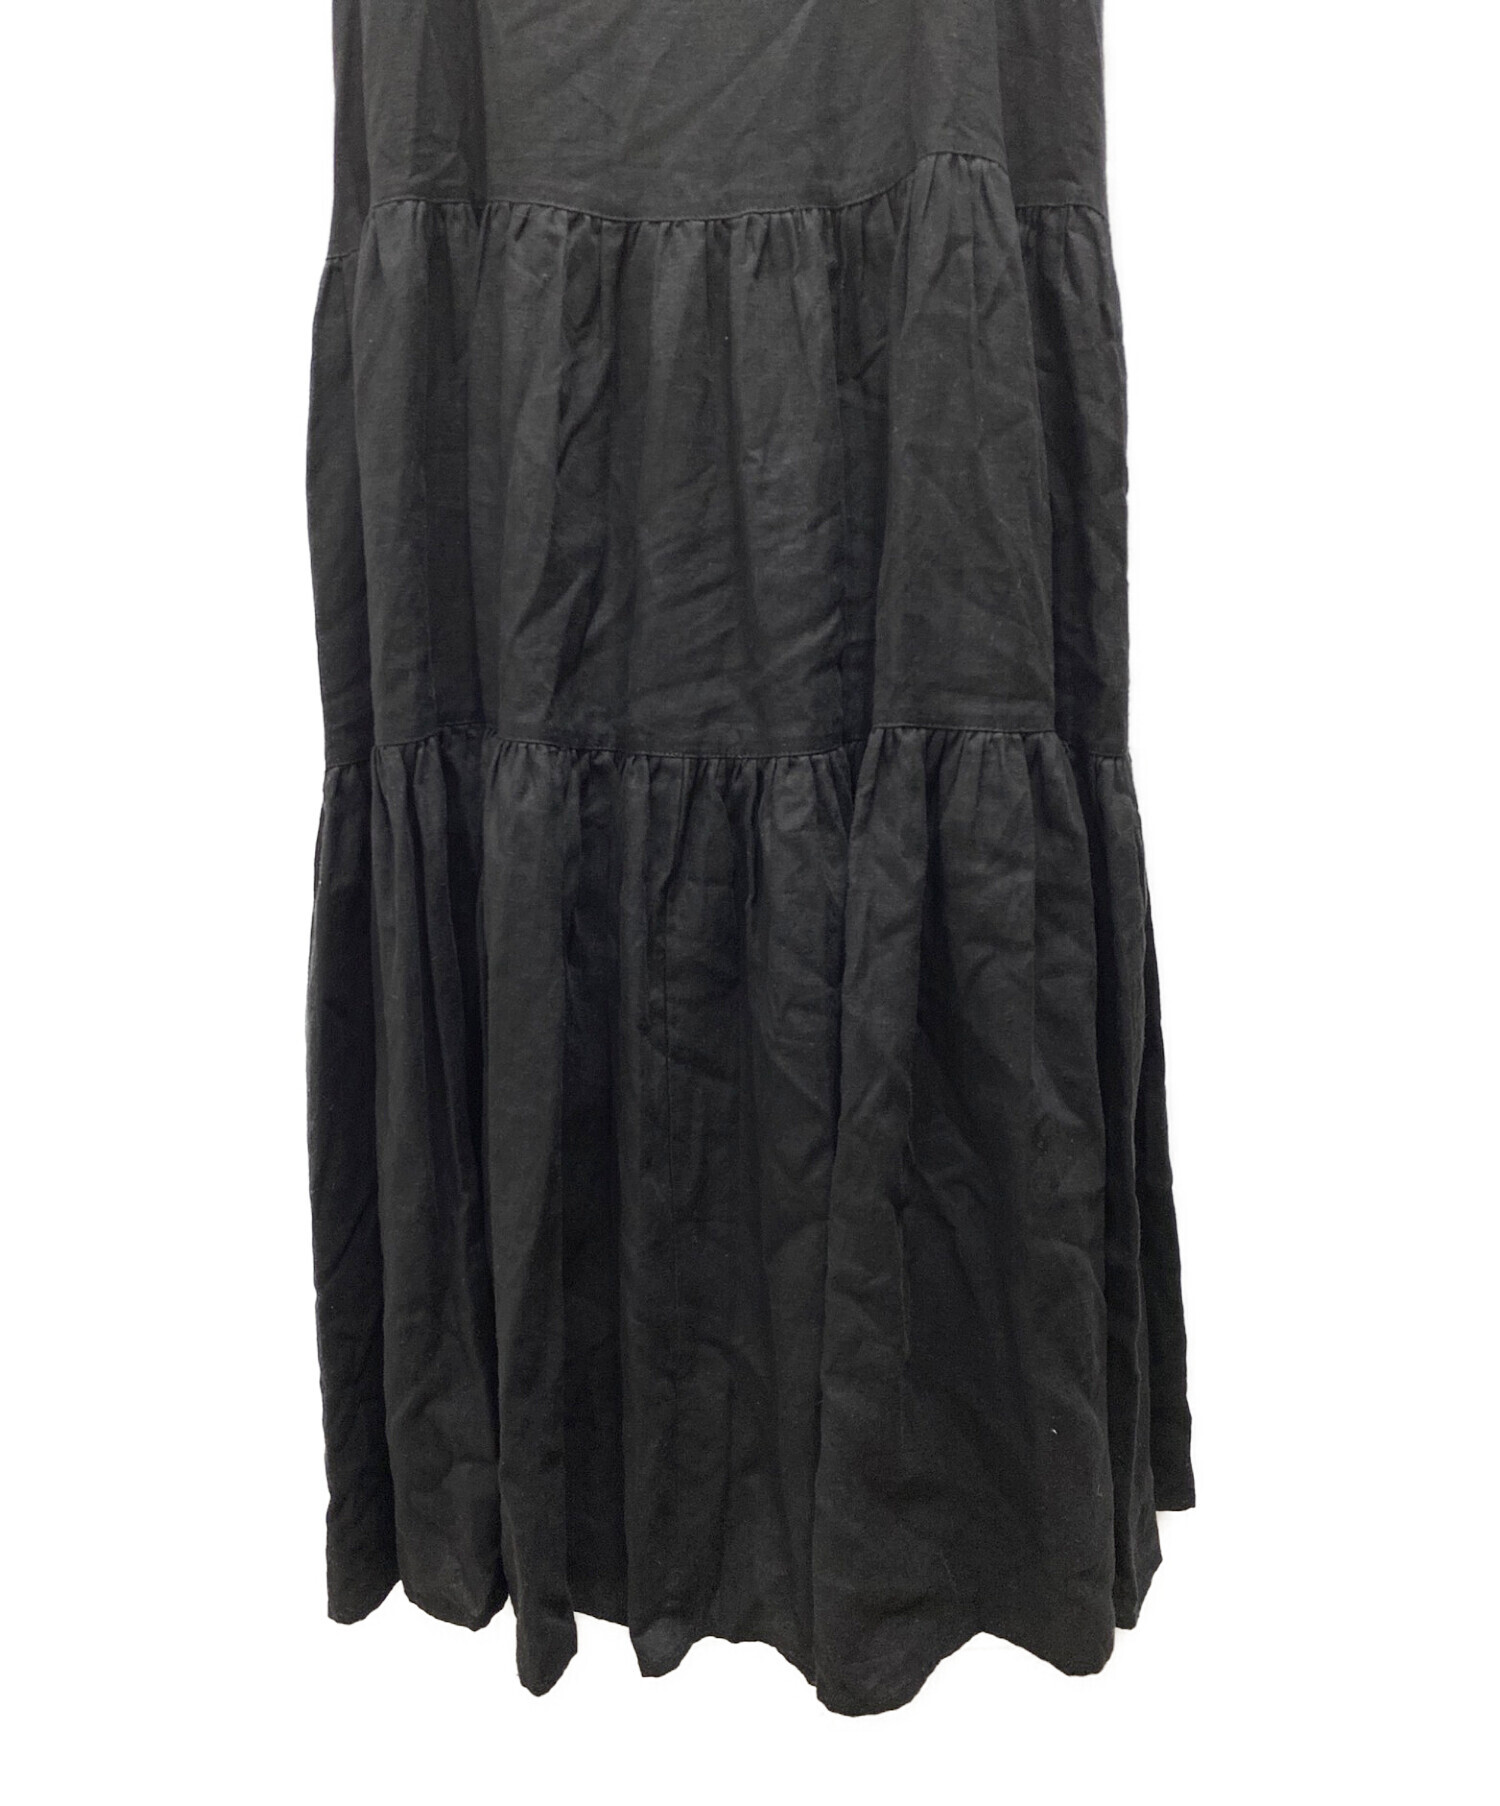 ロングワンピース/マキシワンピースKAIEKA Tiered Camisole Dress / Black